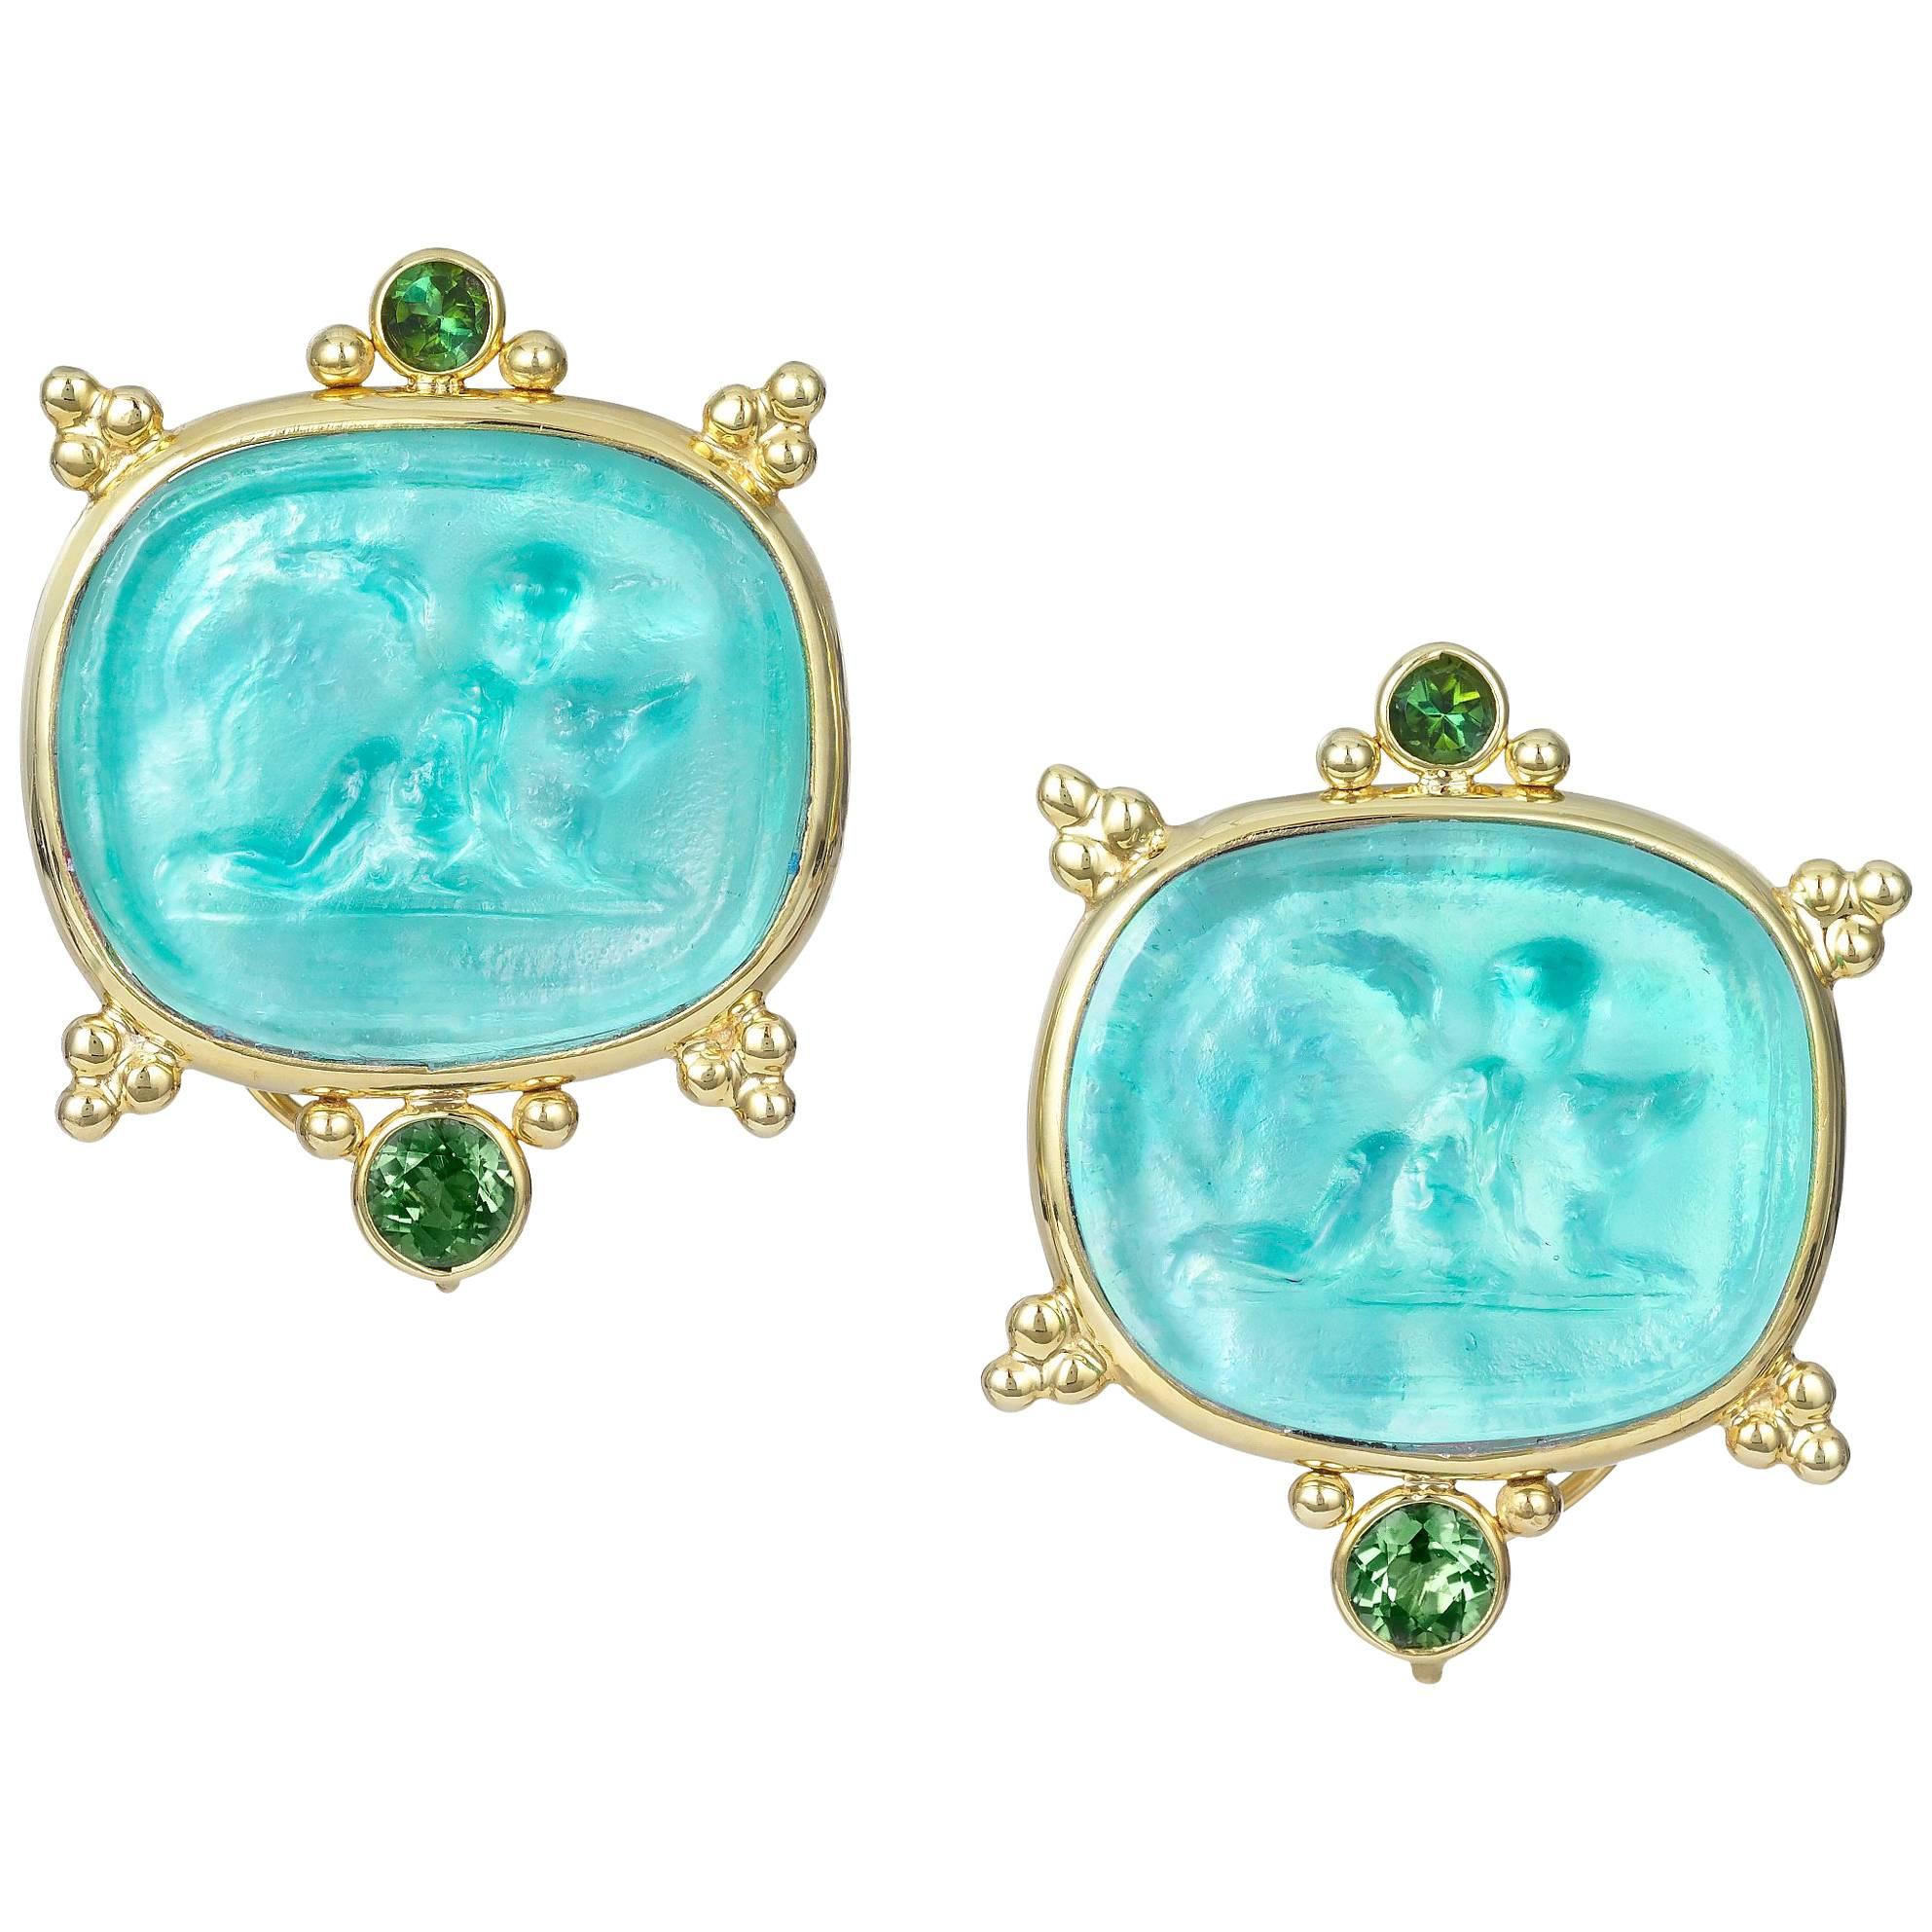 Mazza Venetian Glass Earrings with Green Tourmaline